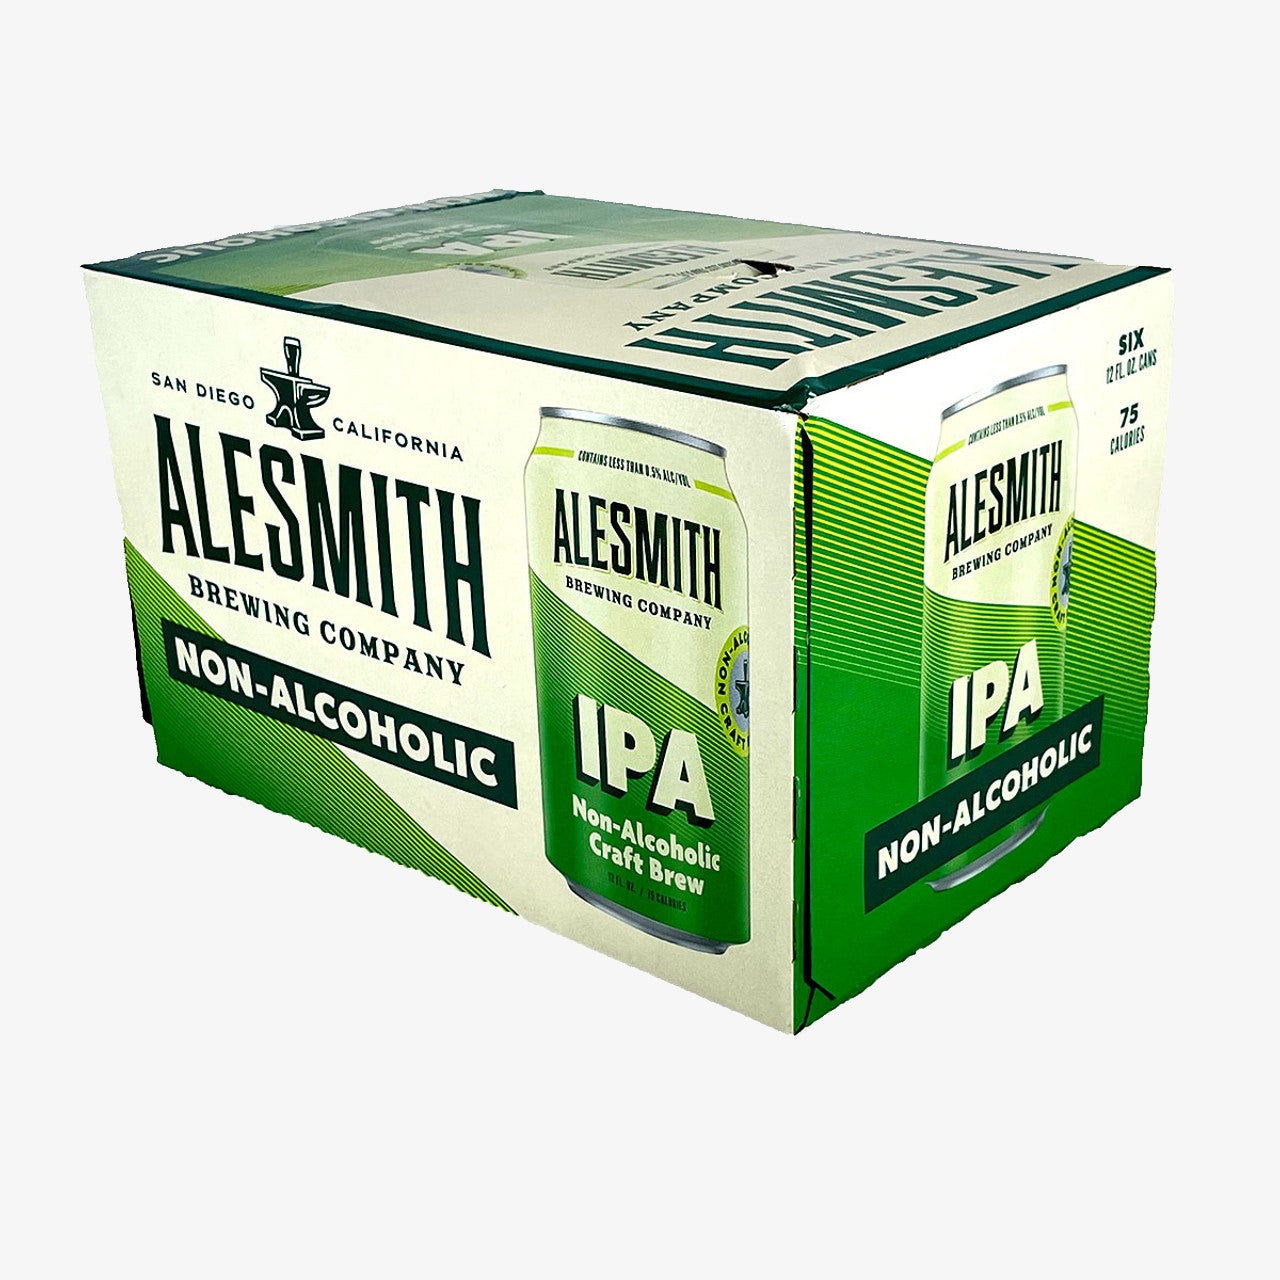 Non-Alcoholic IPA 12oz Cans - AleSmith Brewing Co.